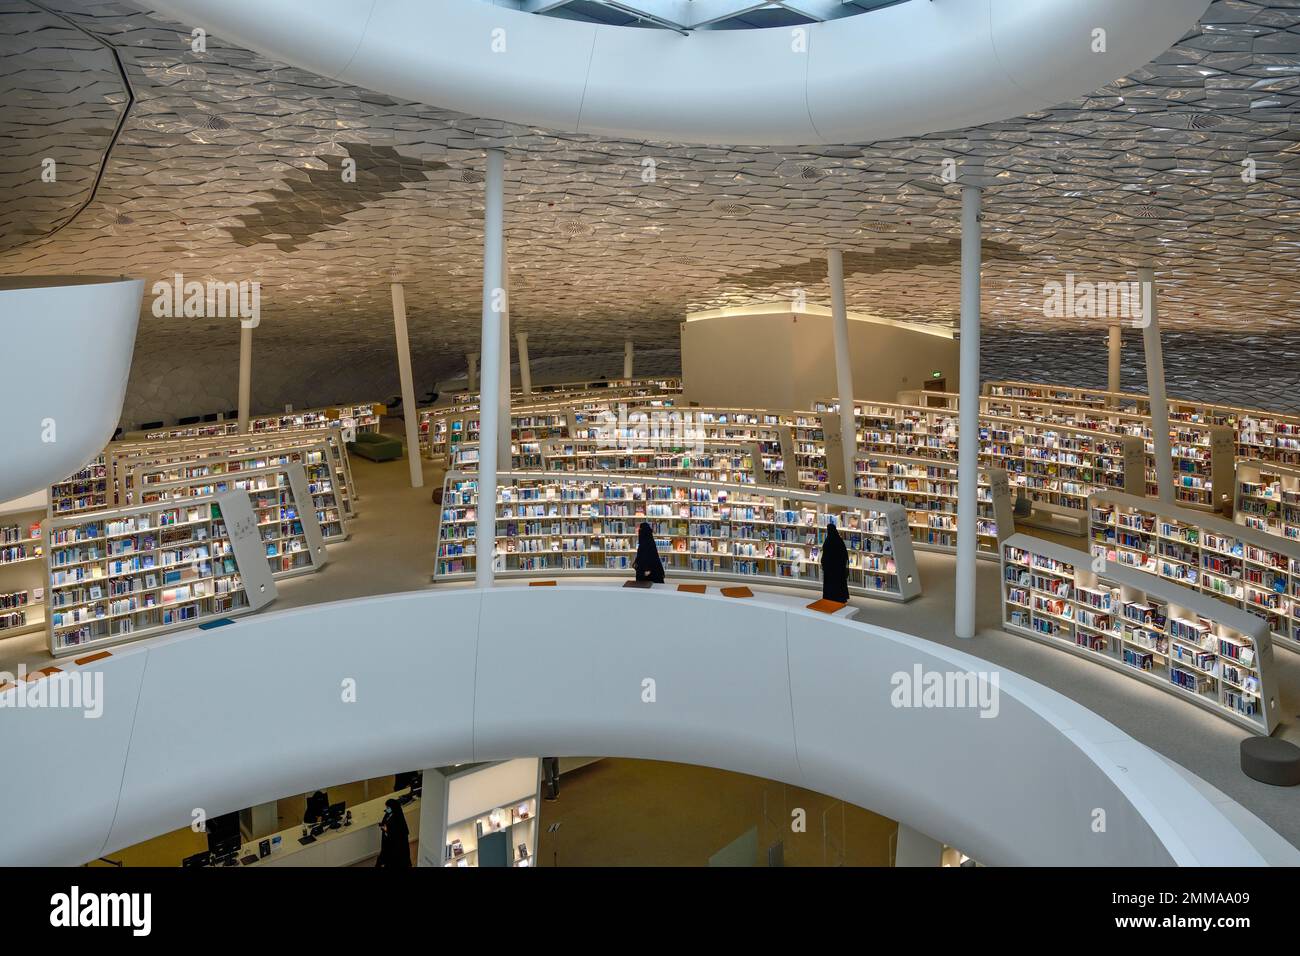 Biblioteca del Centro Rey Abdulaziz para la Cultura Mundial, también conocido como Ithra, Dhahran, provincia de Ash-Sharqiyya, Golfo Pérsico, Arabia Saudita Foto de stock